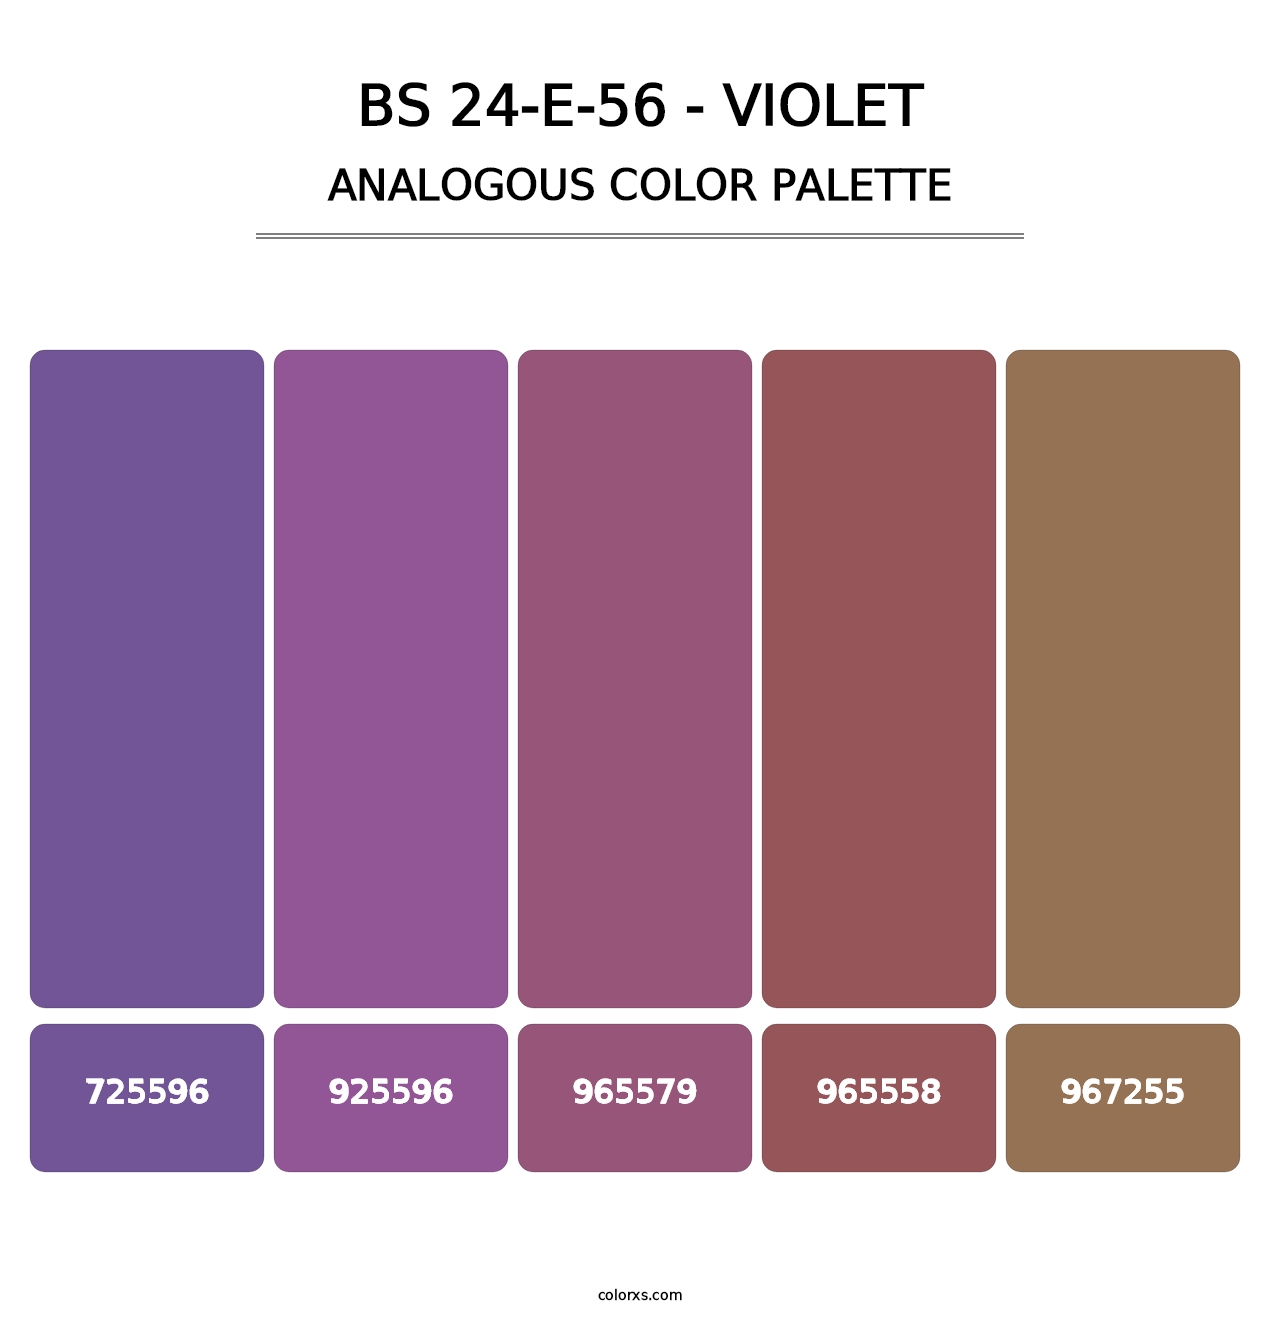 BS 24-E-56 - Violet - Analogous Color Palette